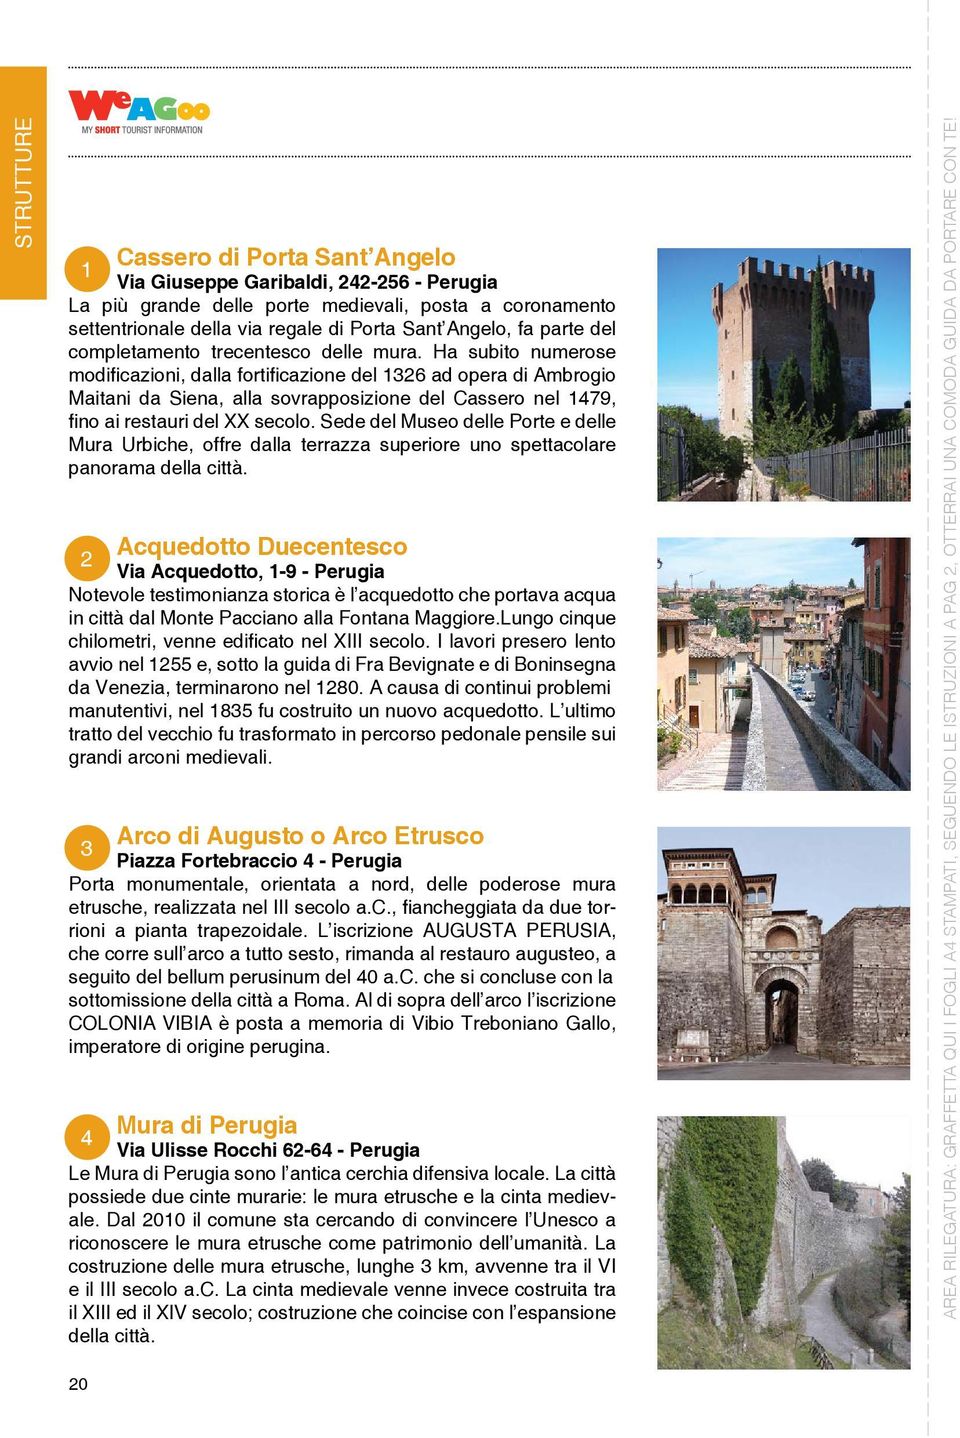 Ha subito numerose modificazioni, dalla fortificazione del 1326 ad opera di Ambrogio Maitani da Siena, alla sovrapposizione del Cassero nel 1479, fino ai restauri del XX secolo.